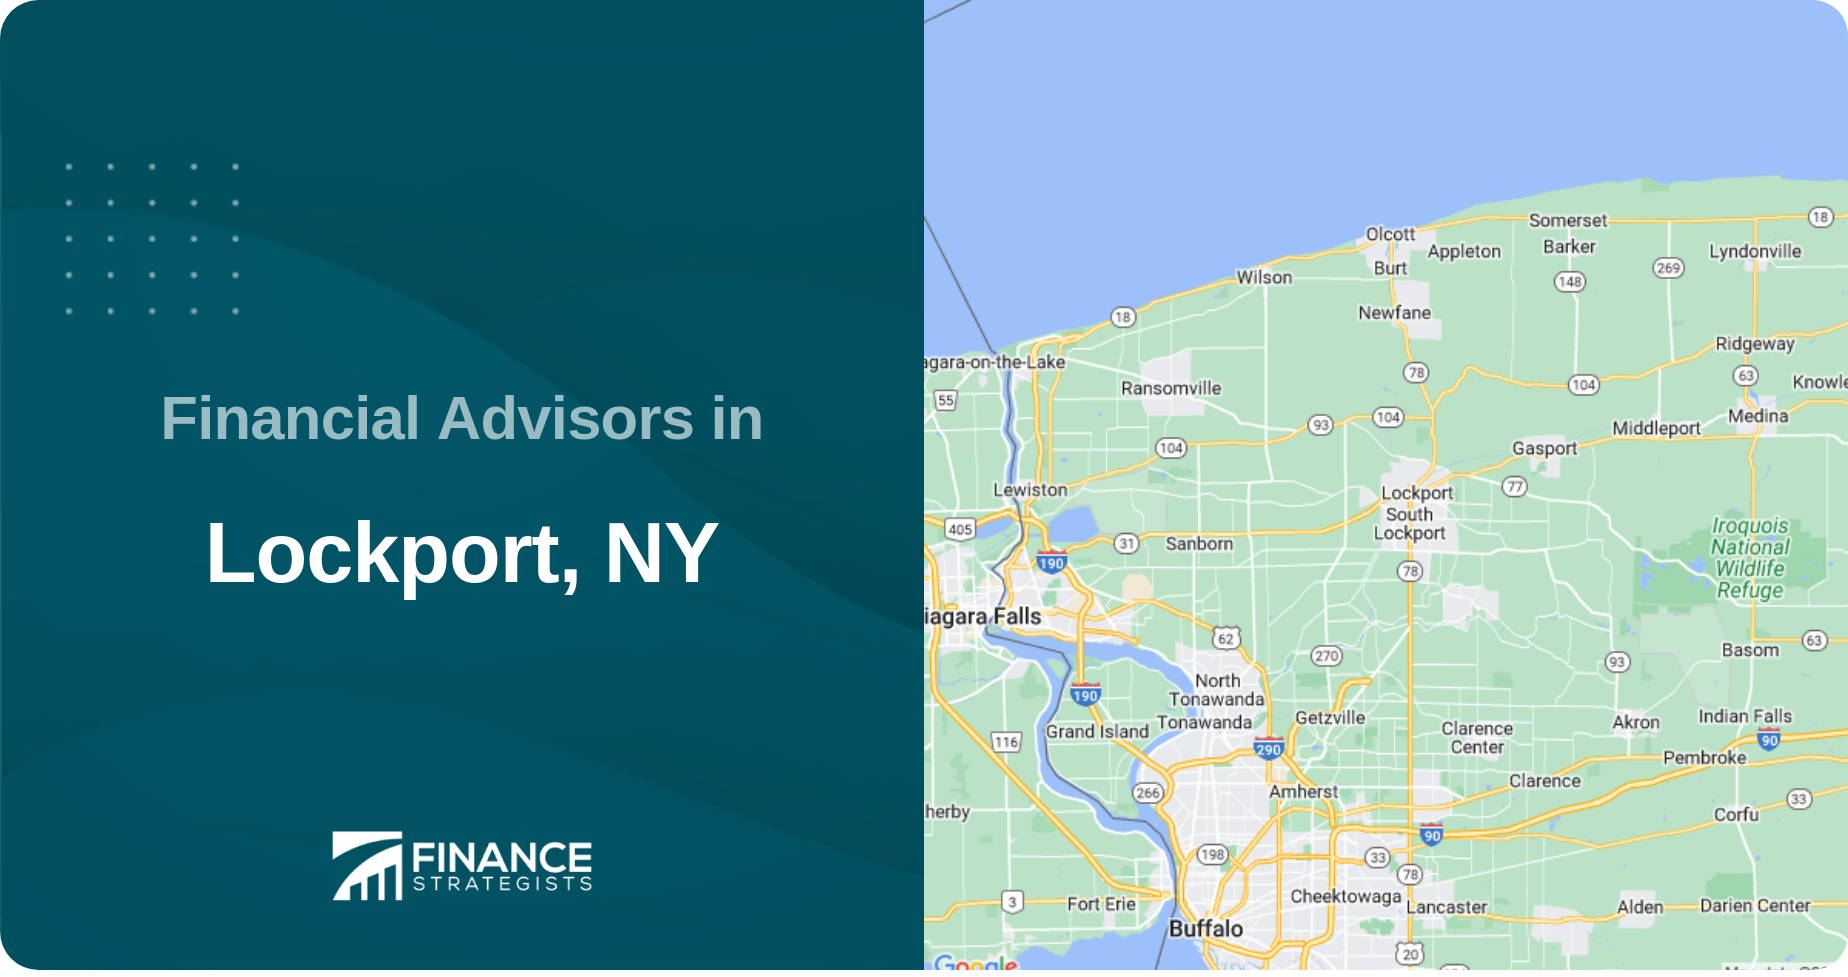 Financial Advisors in Lockport, NY